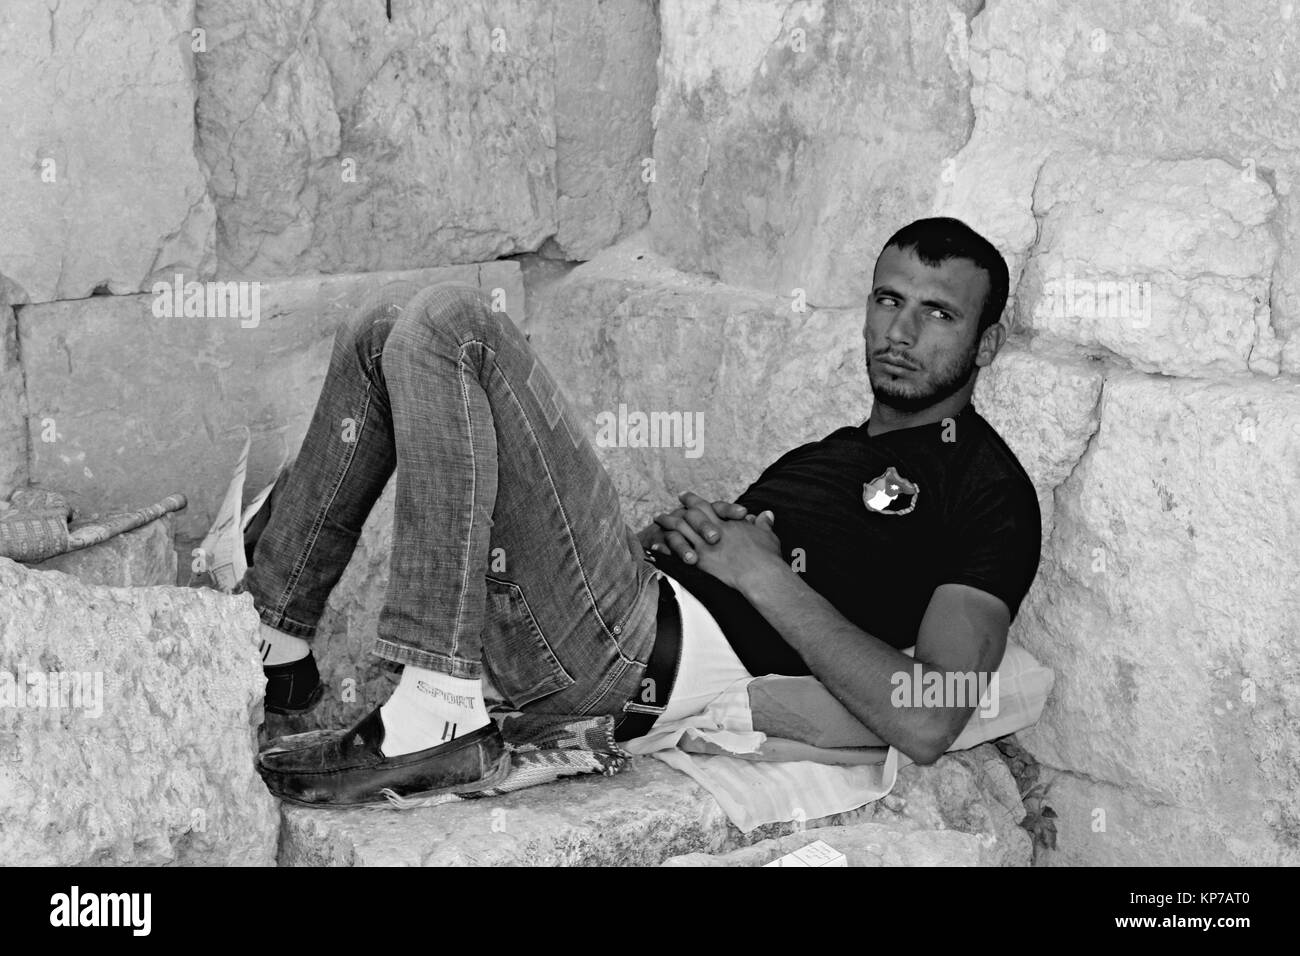 Müde Mann in Jerash - 21/04/2017 - Jordanien/Amman - Sguardi Aridi von Ali Raffaele Matar Schuß im April 2017 - hoffnungslos Augen von einem mürrischen arabischen Kop Stockfoto